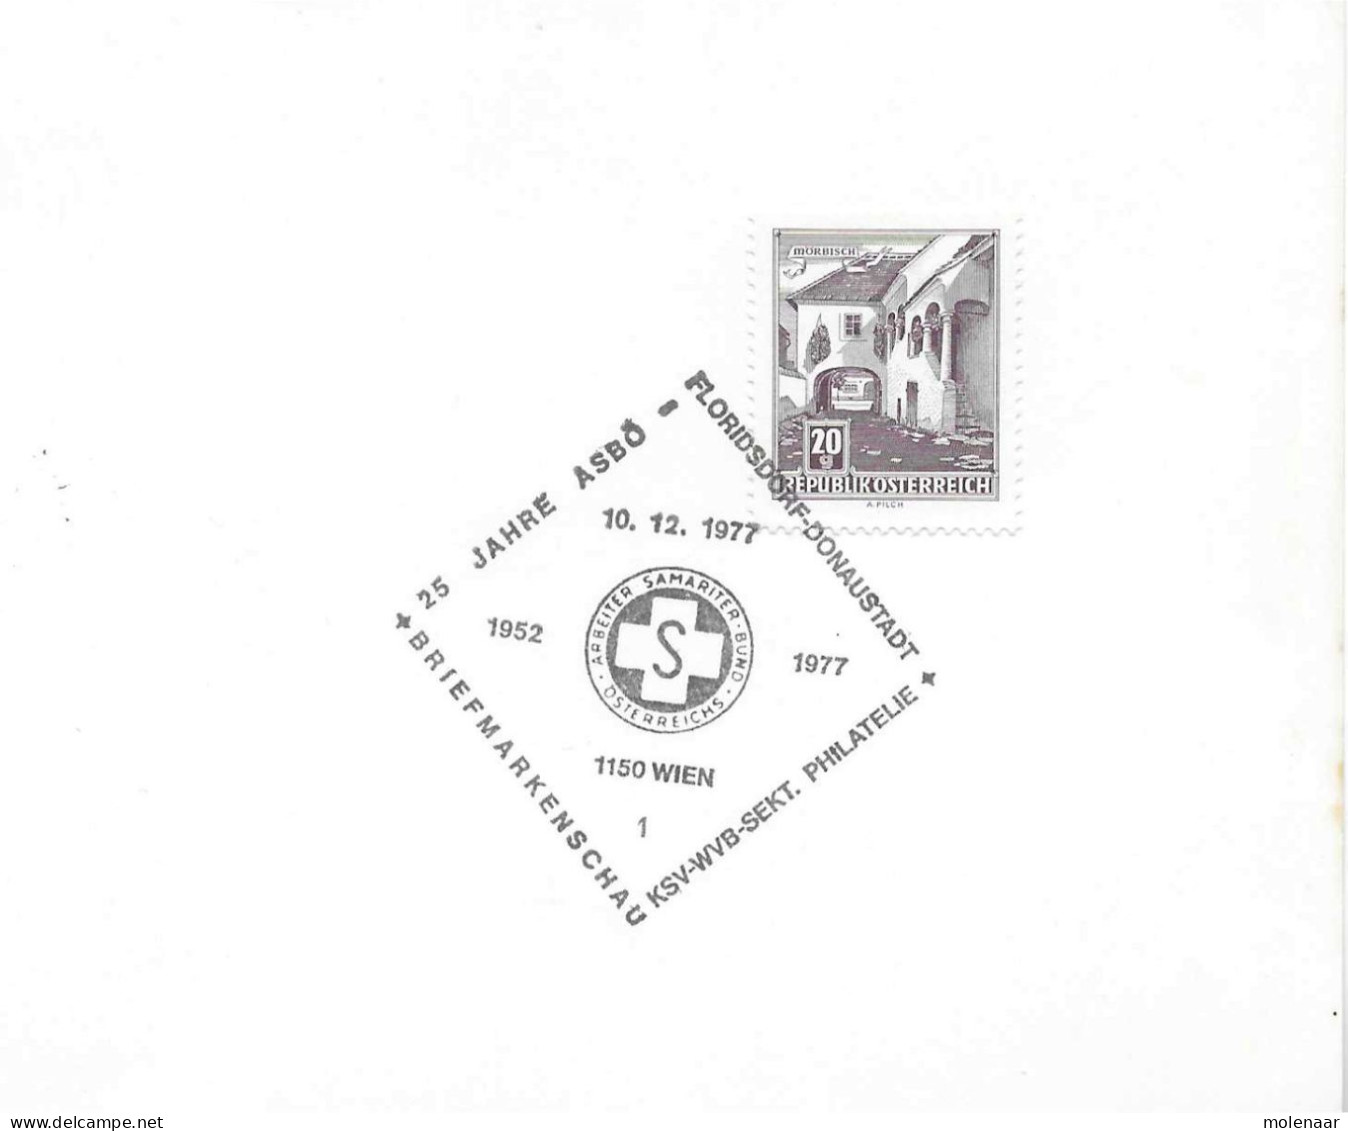 Postzegels > Europa > Oostenrijk >  Republiek > 1971-1900 > Kaart Uit 1977  Met 1 Postzegel (17767) - Covers & Documents